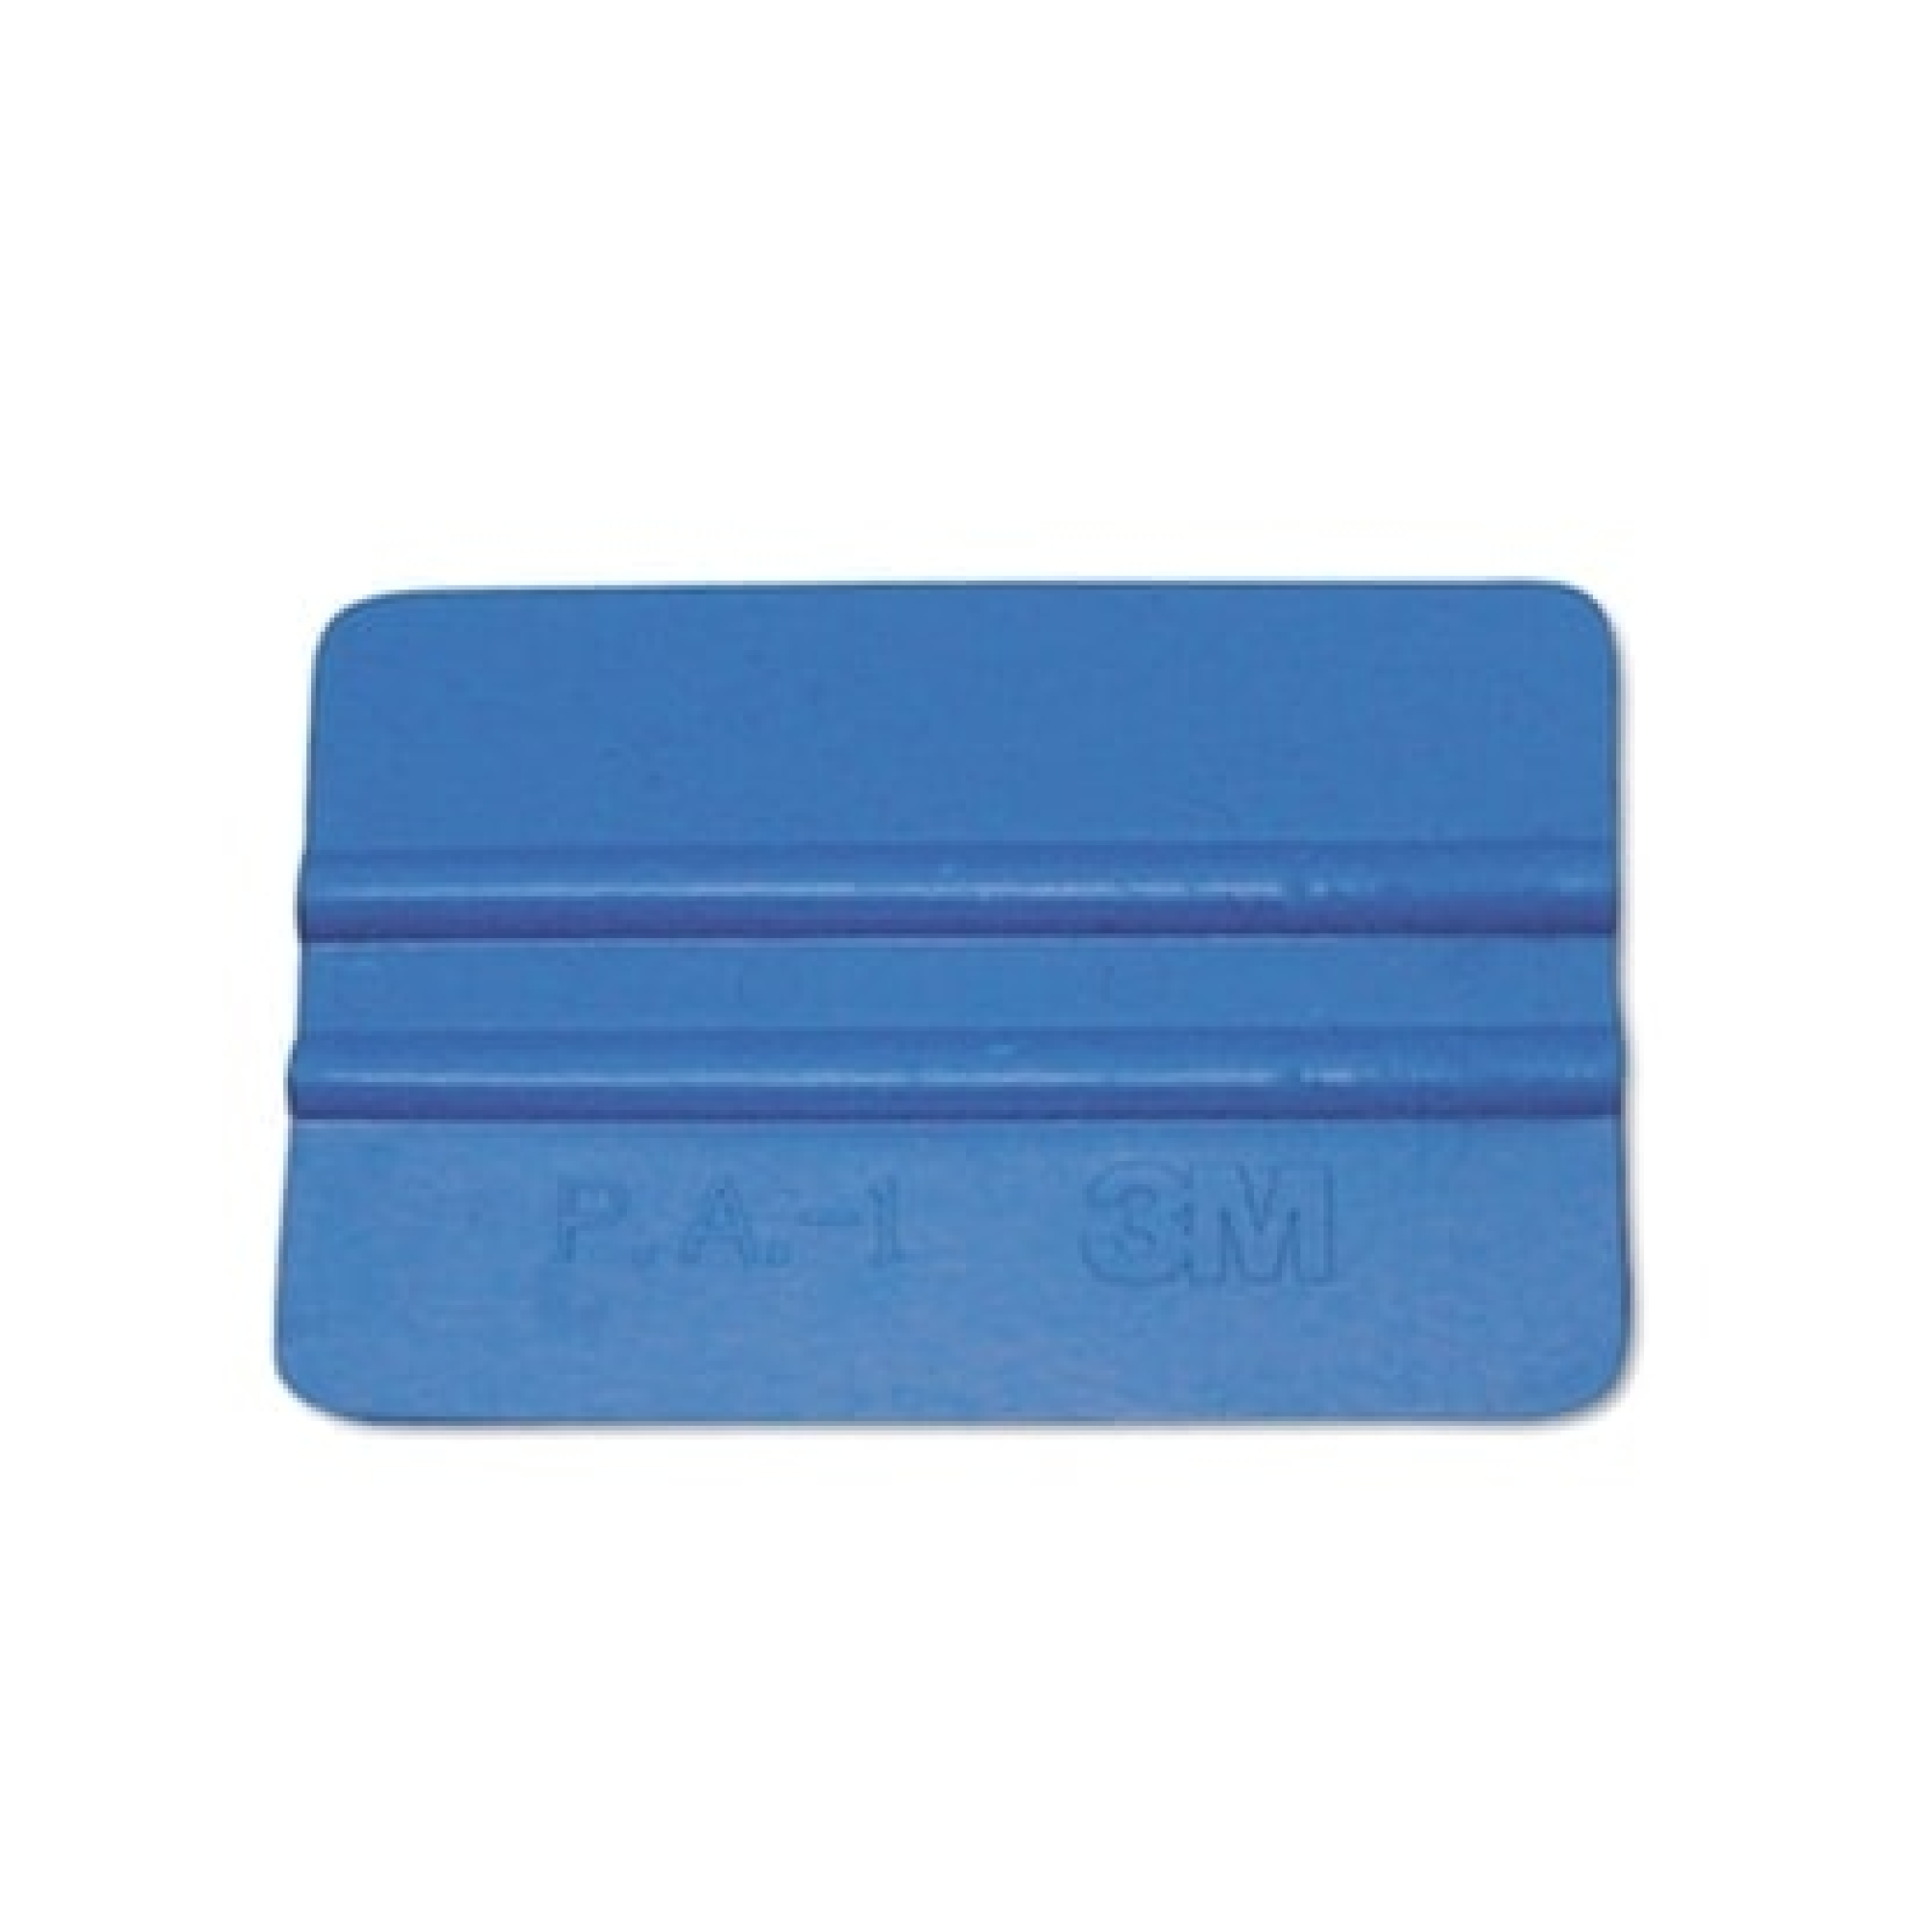 3M™ RAK-BLAU Rakel, Blau, Weich, 7 cm x 10 cm x 0,7 cm, Rakel für